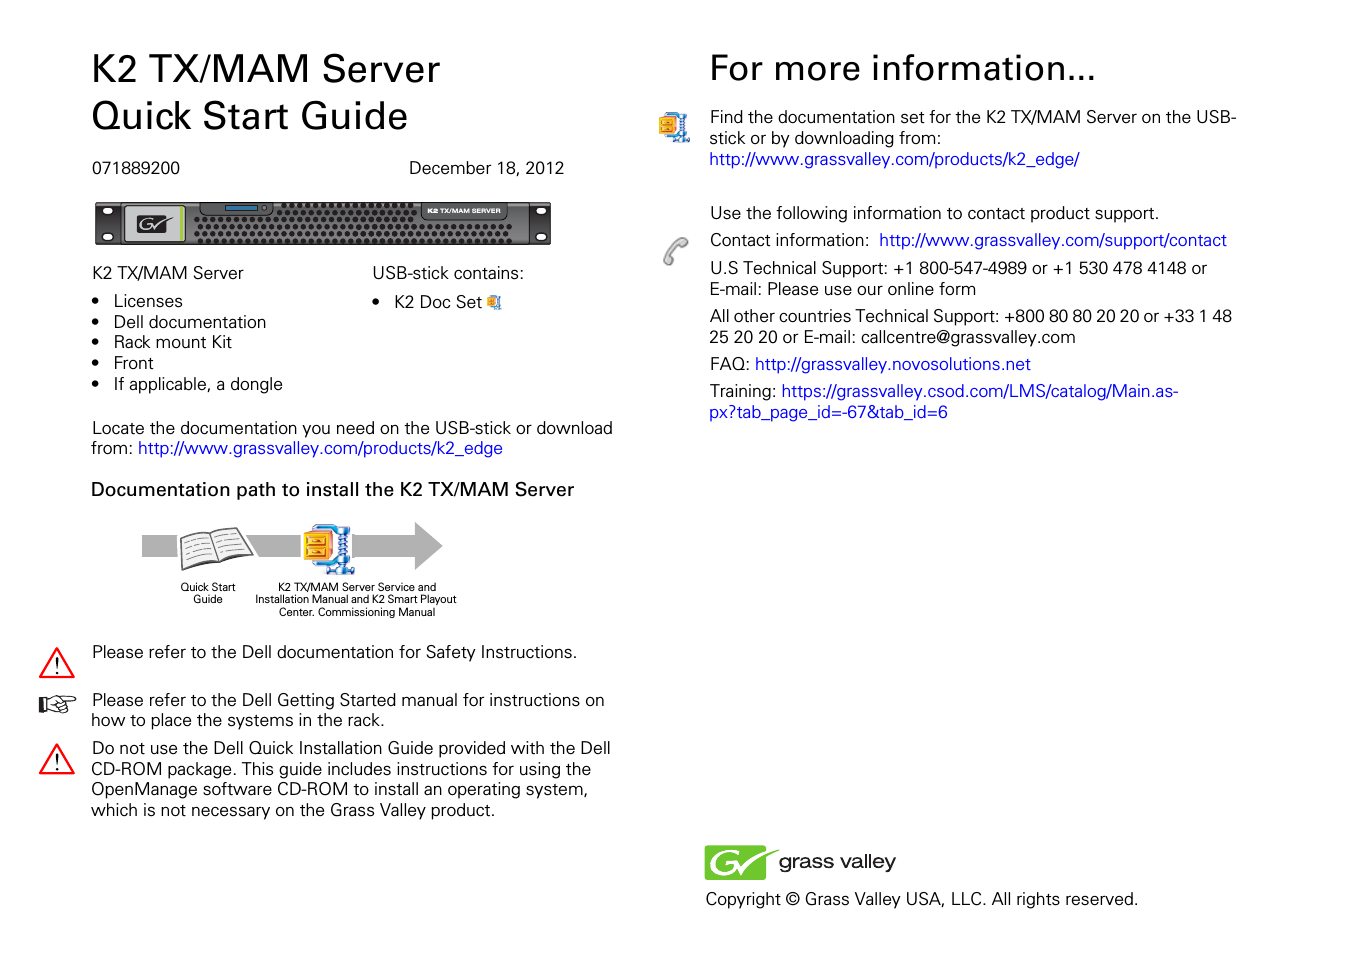 K2 TX/MAM Server Quick Start Guide v.2.2